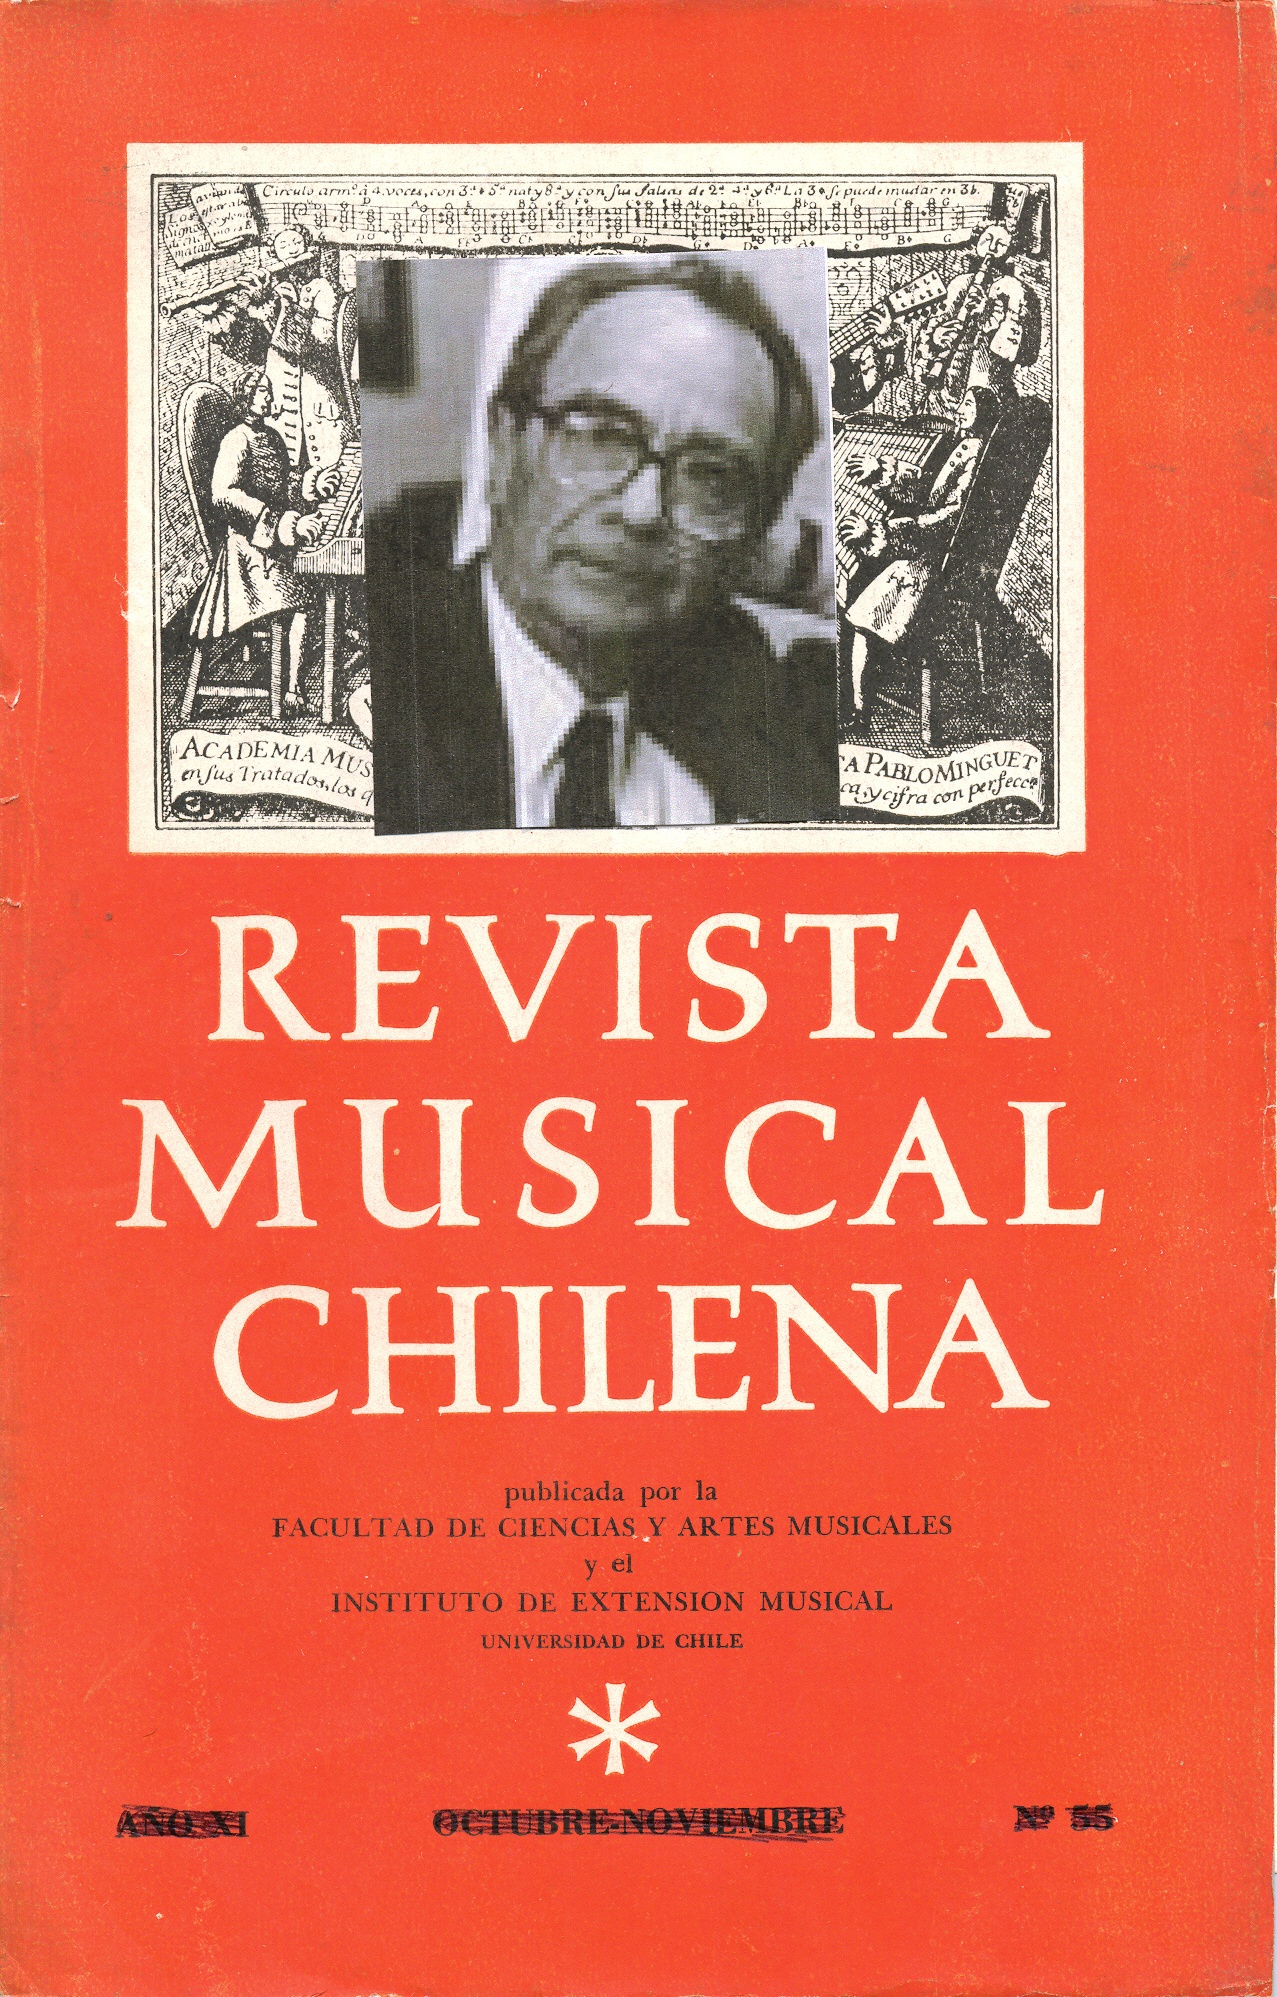 											Ver Vol. 1 (2012): Orrego Salas, Juan Antonio (1919)
										